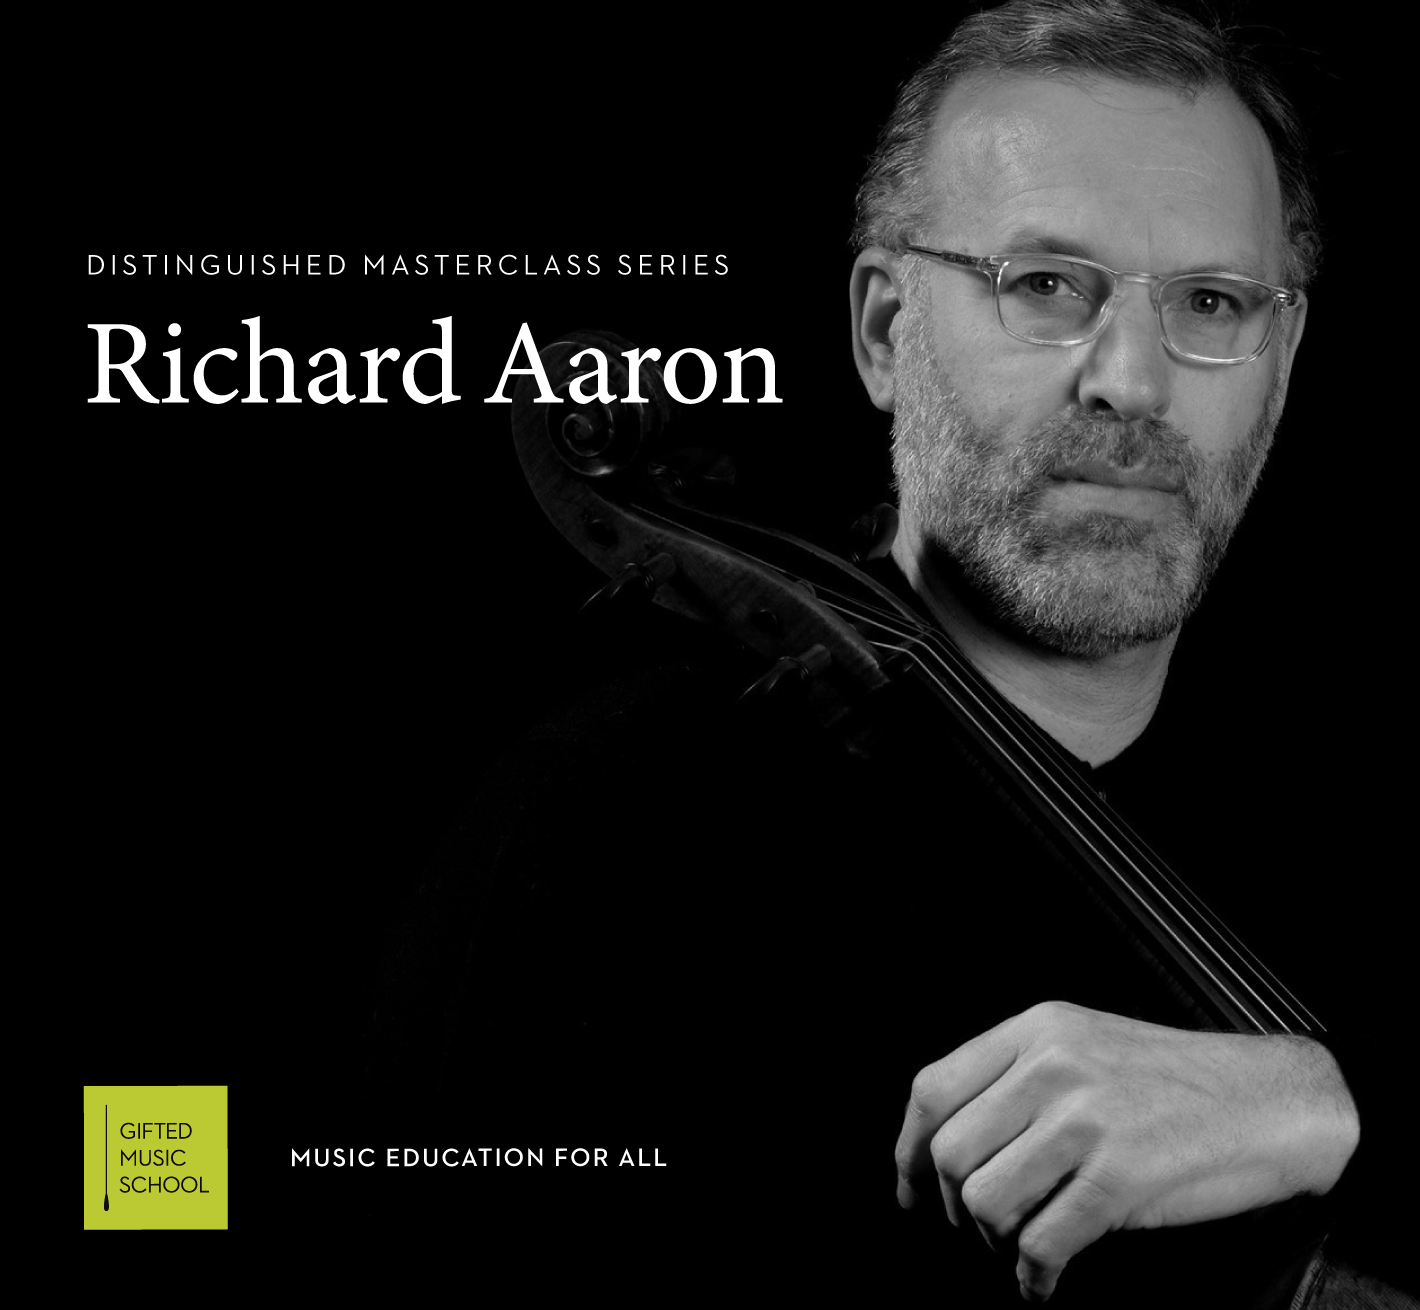 Richard Aaron cello masterclass header image